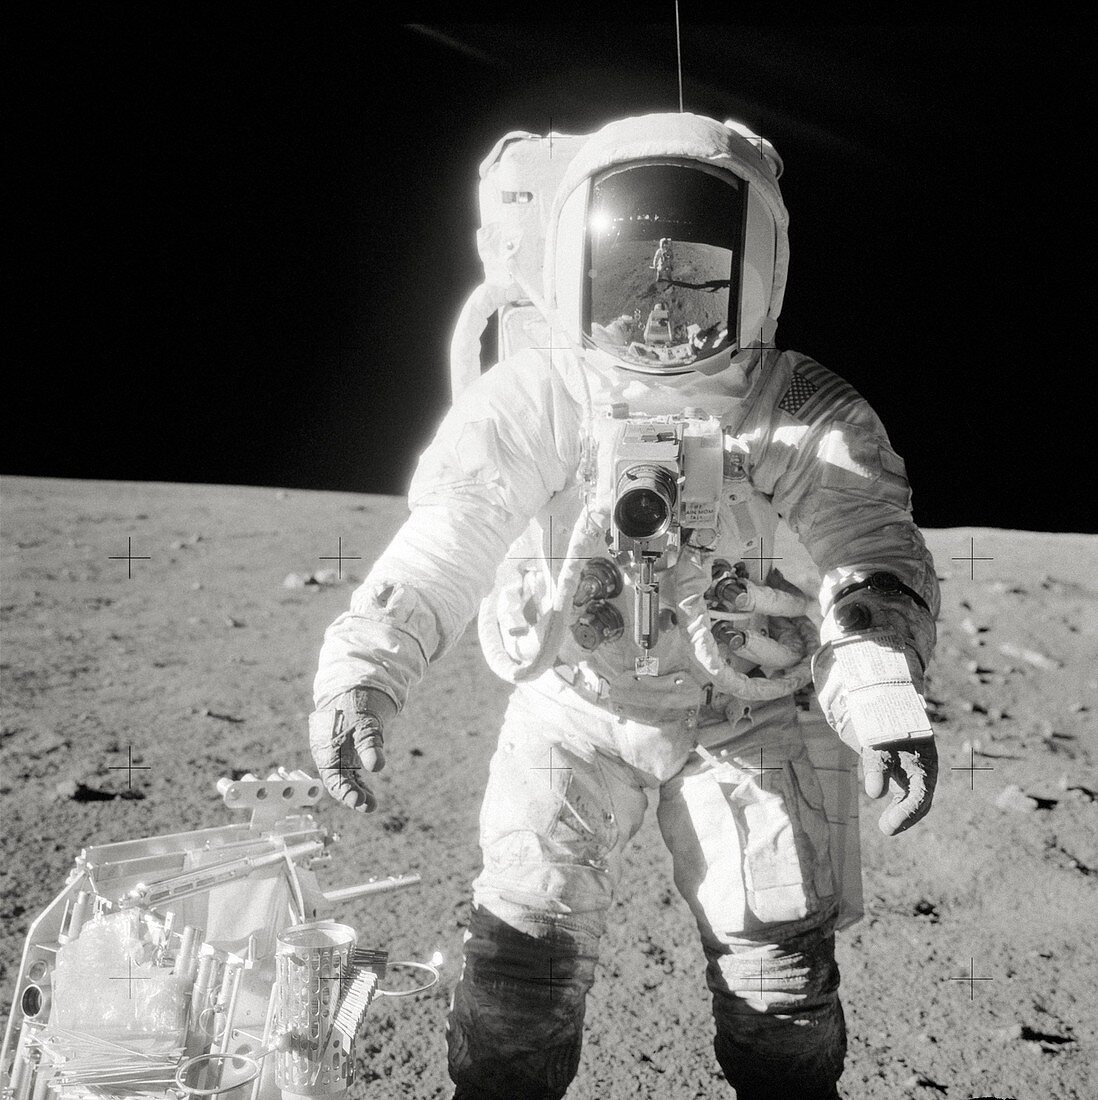 Apollo 12 astronaut Bean on the Moon, 1969